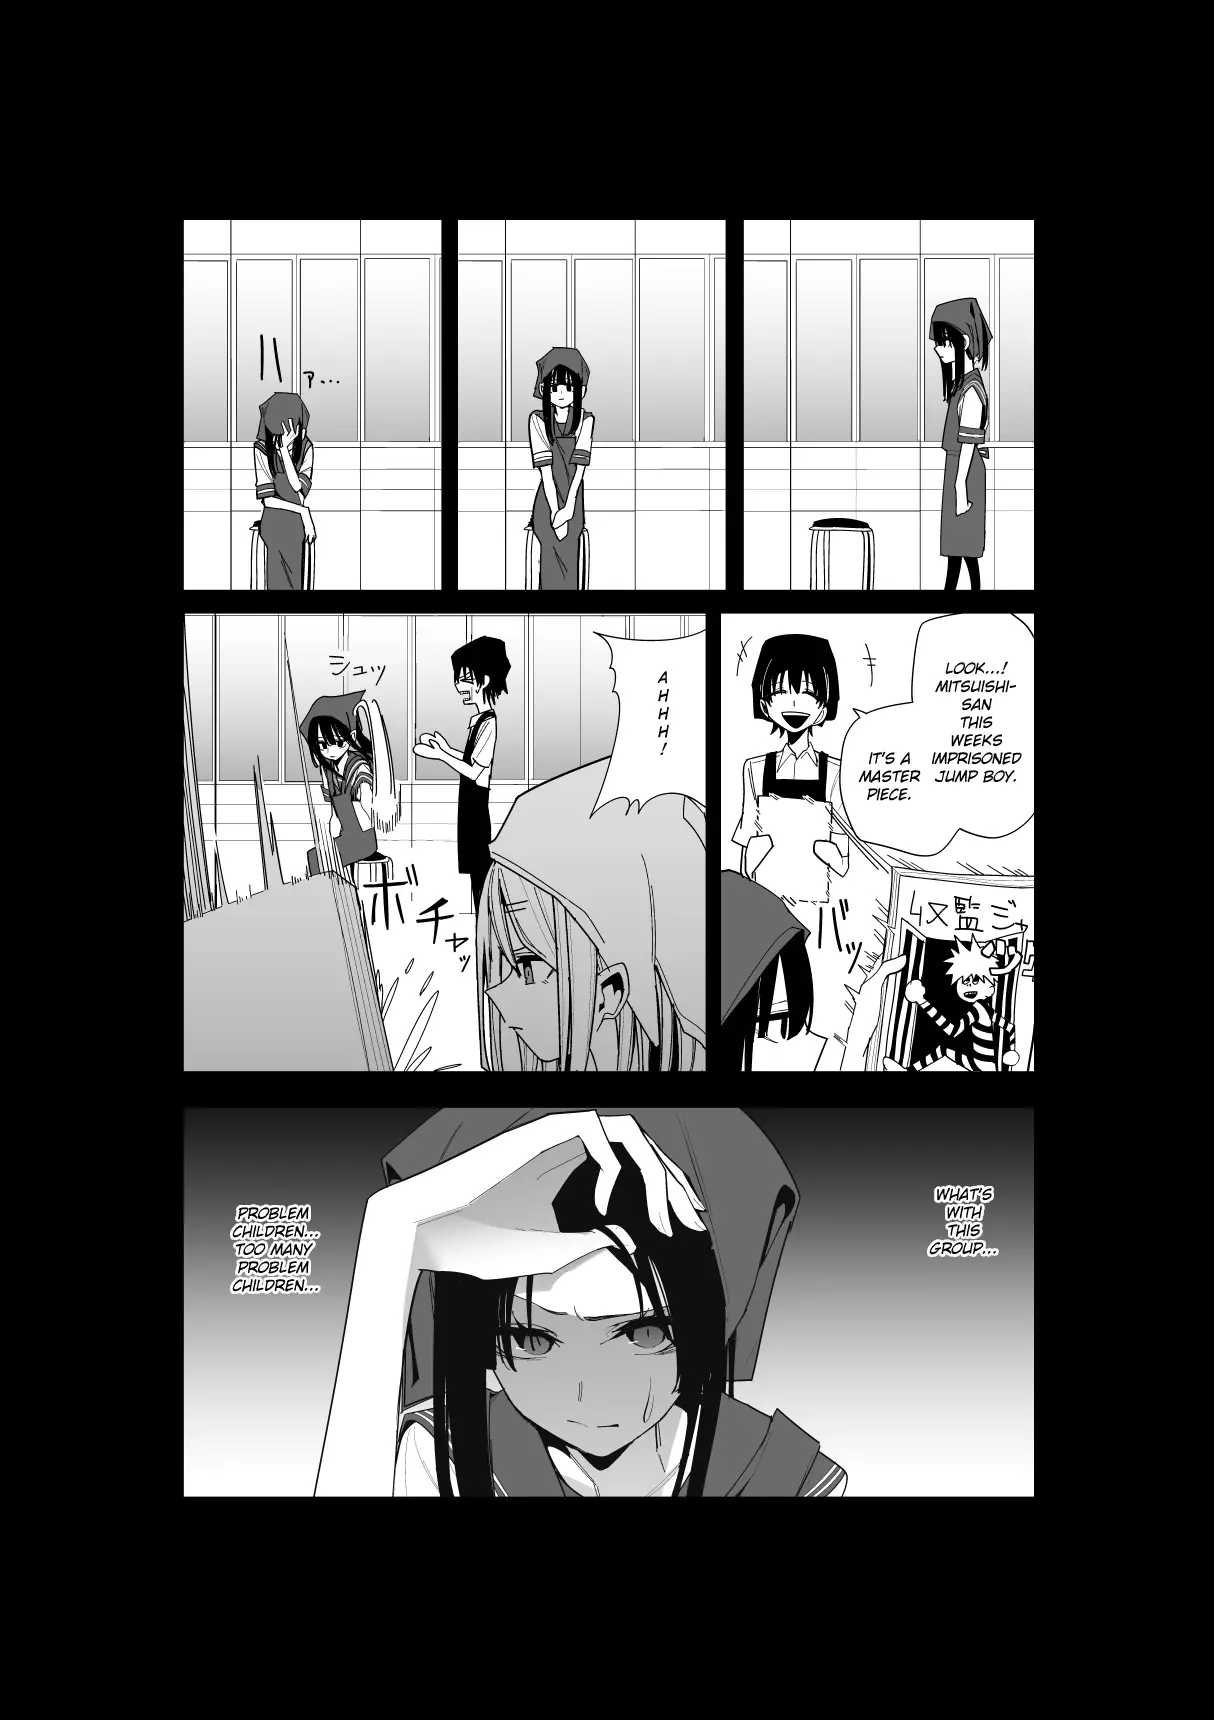 Mitsuishi-San - 25 page 7-e4ad34d8